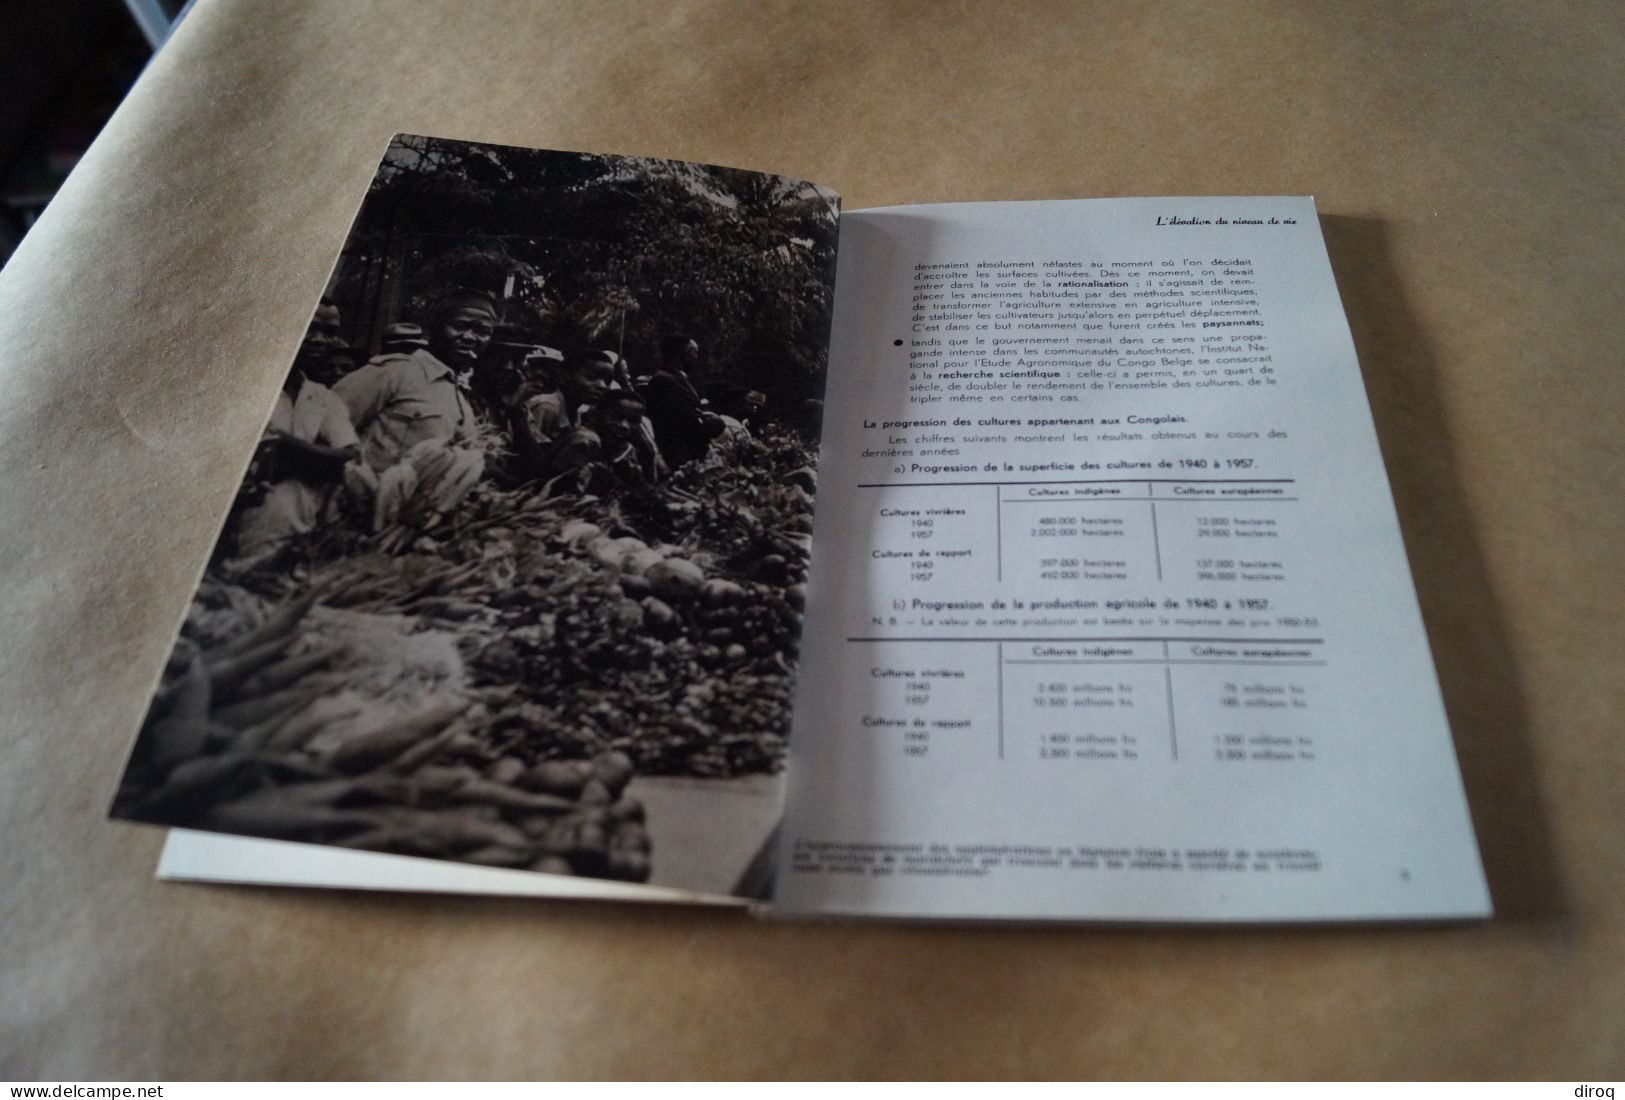 Congo Belge,1957, 13 Millions De Congolais,80 Pages,24 Cm. Sur 16 Cm. - Non Classificati